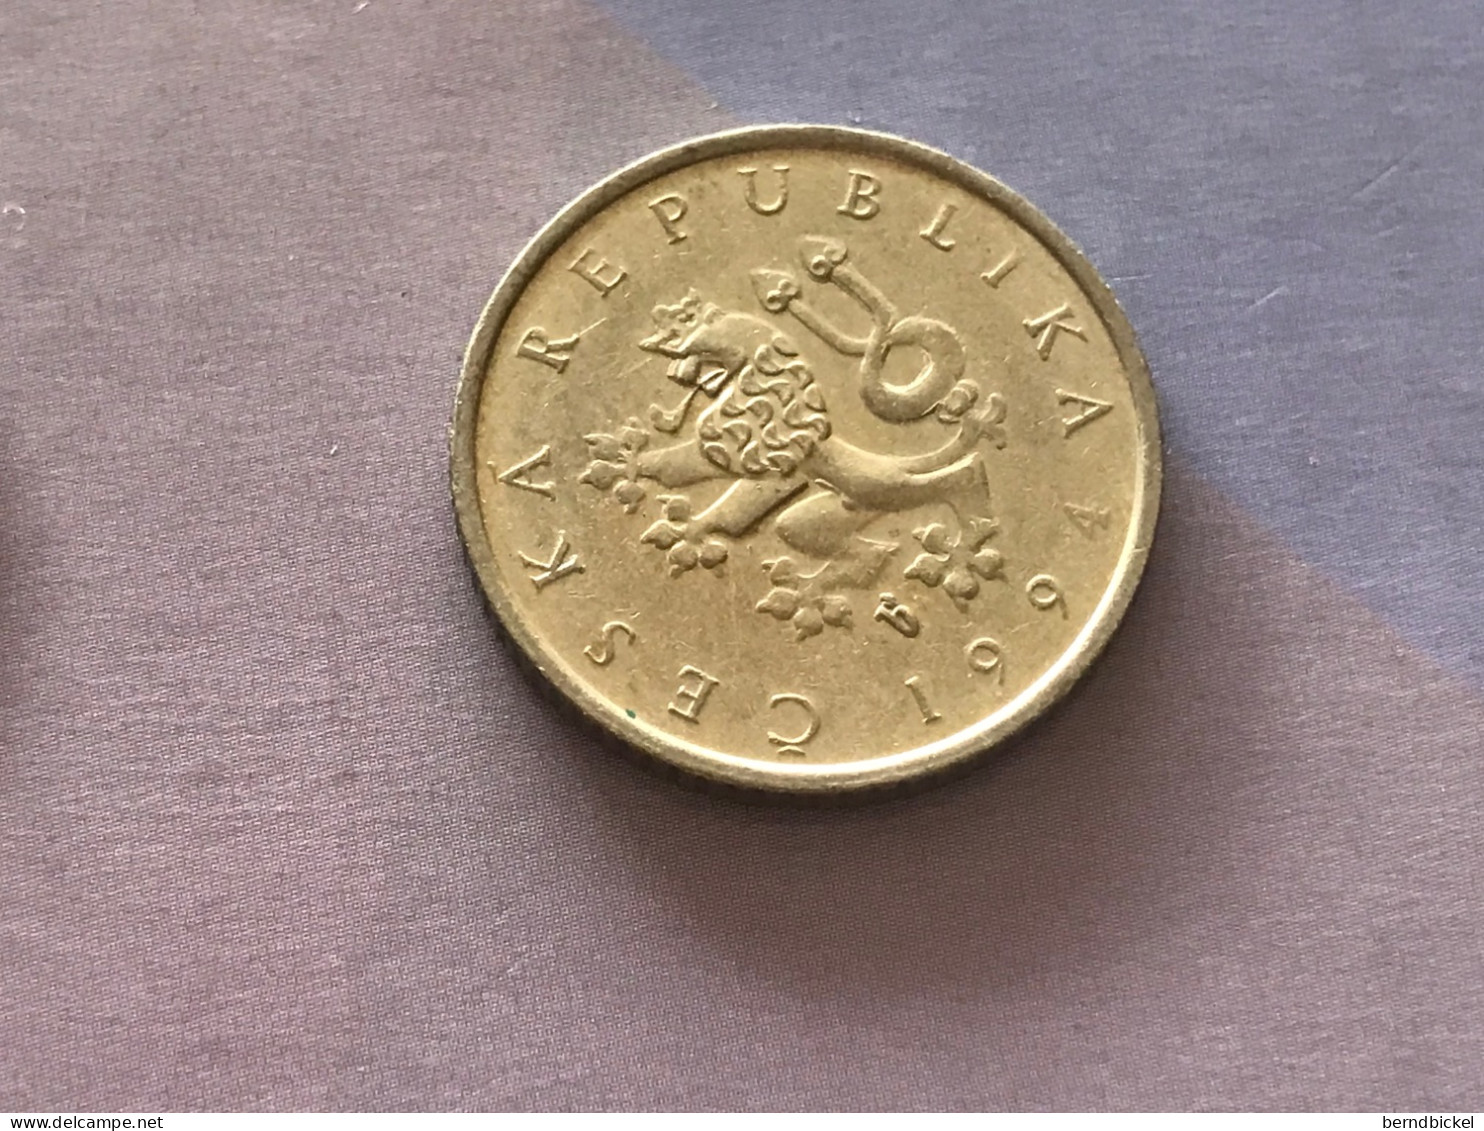 Münze Münzen Umlaufmünze Tschechische Republik 1 Krone 1994 - Czech Republic